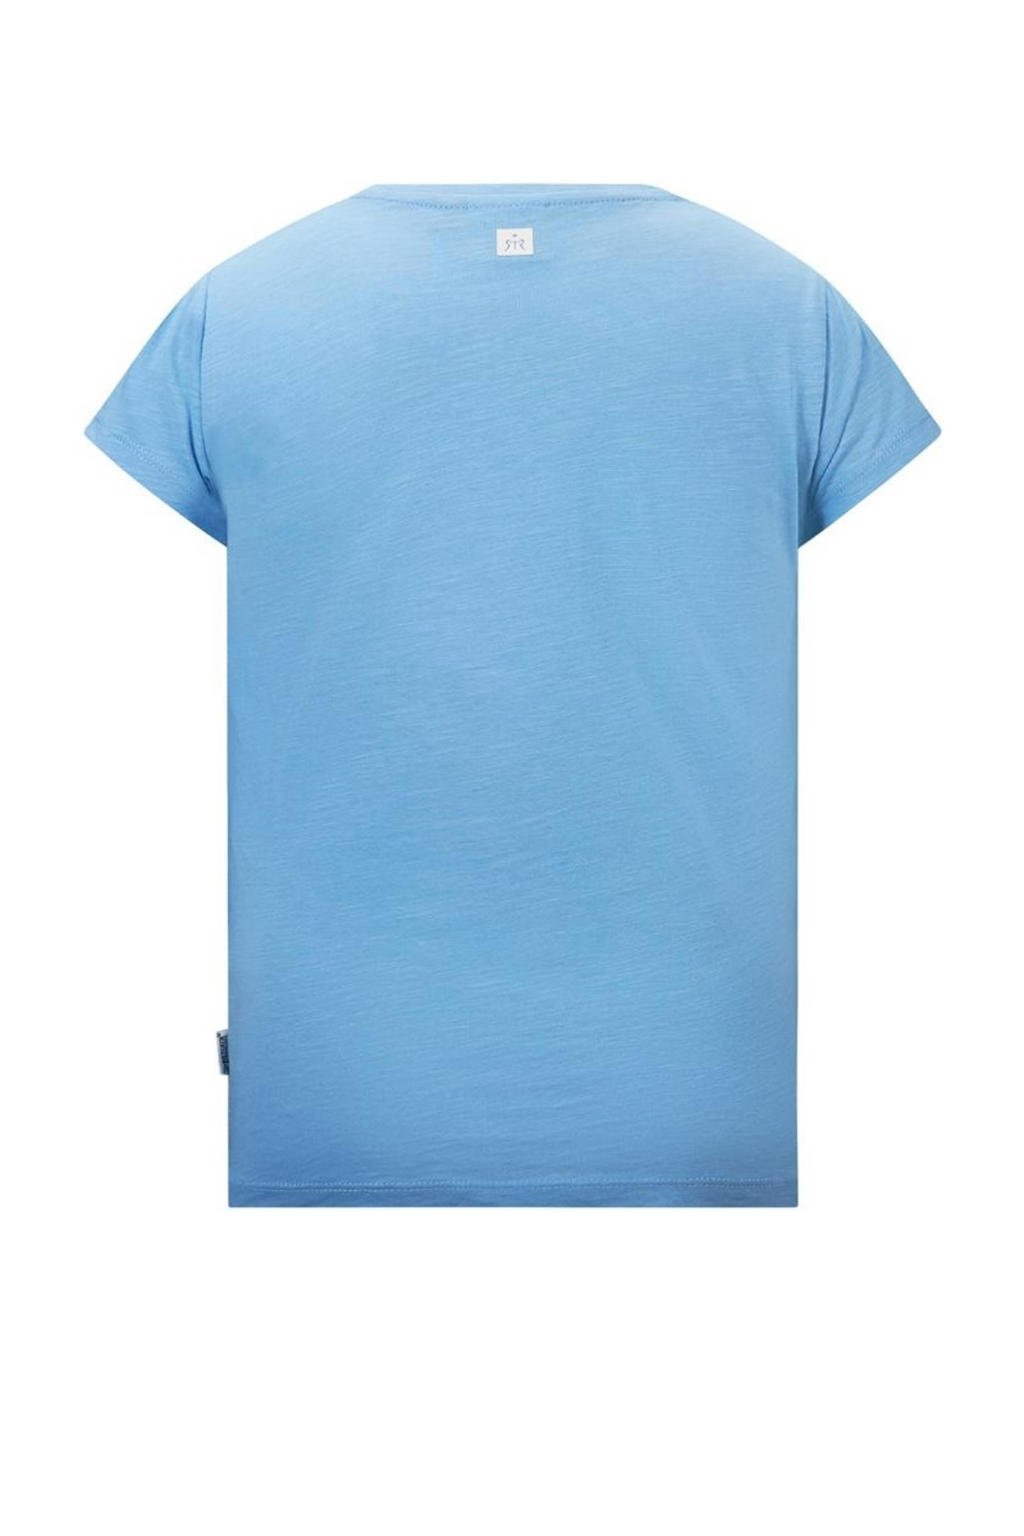 Blauwe meisjes Retour Denim T-shirt Lorient van katoen met tekst print, korte mouwen en ronde hals